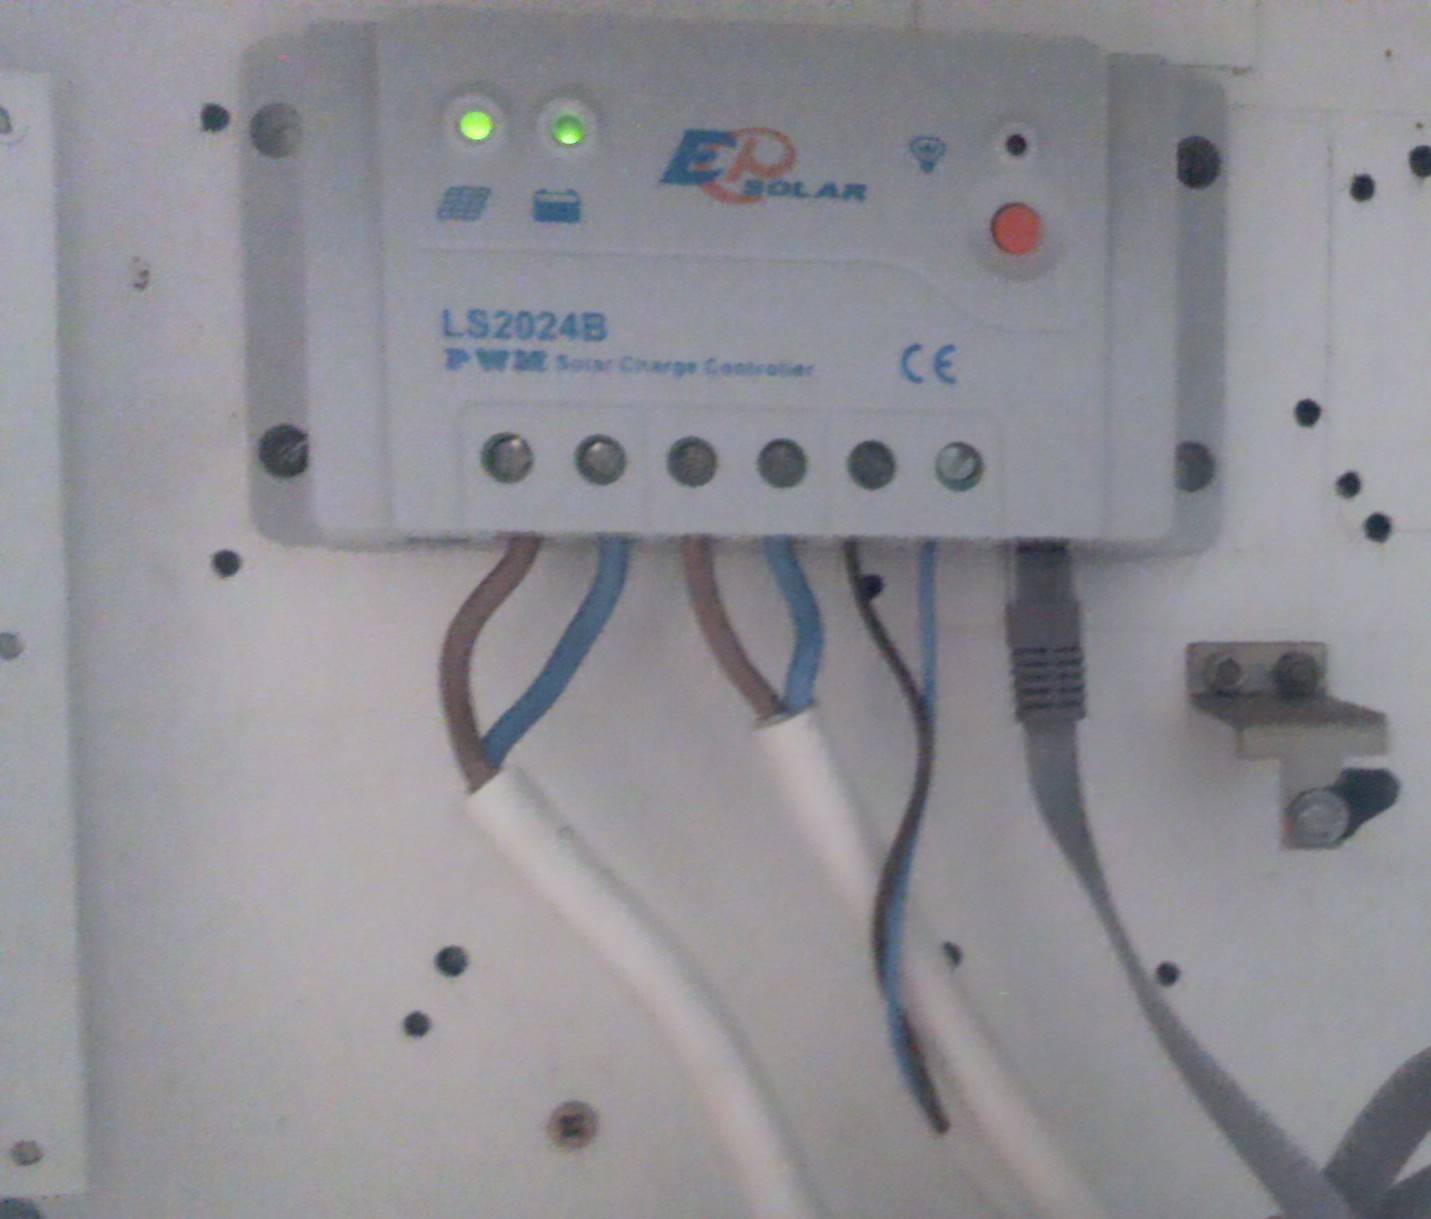 Установленный в квартире контроллер солнечных батарей Epsolar LS2024B